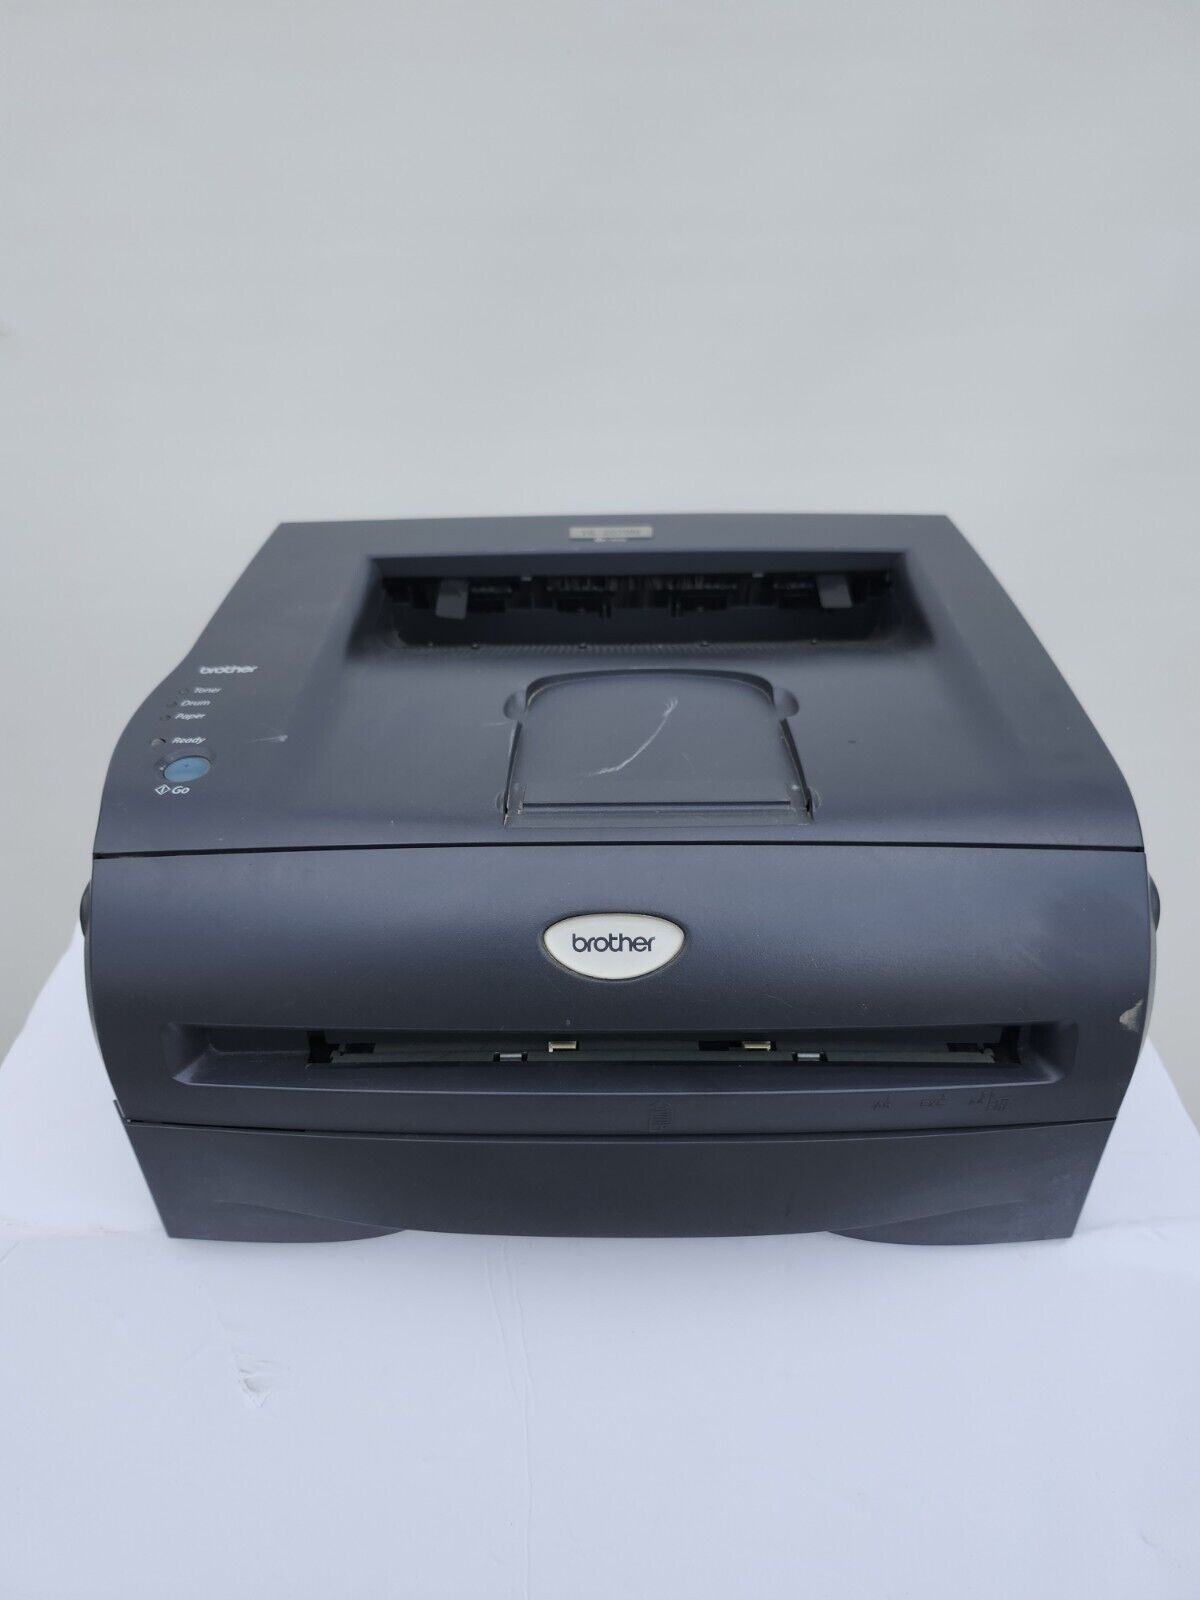 Brother HL-2070N Standard Laser Printer tested working